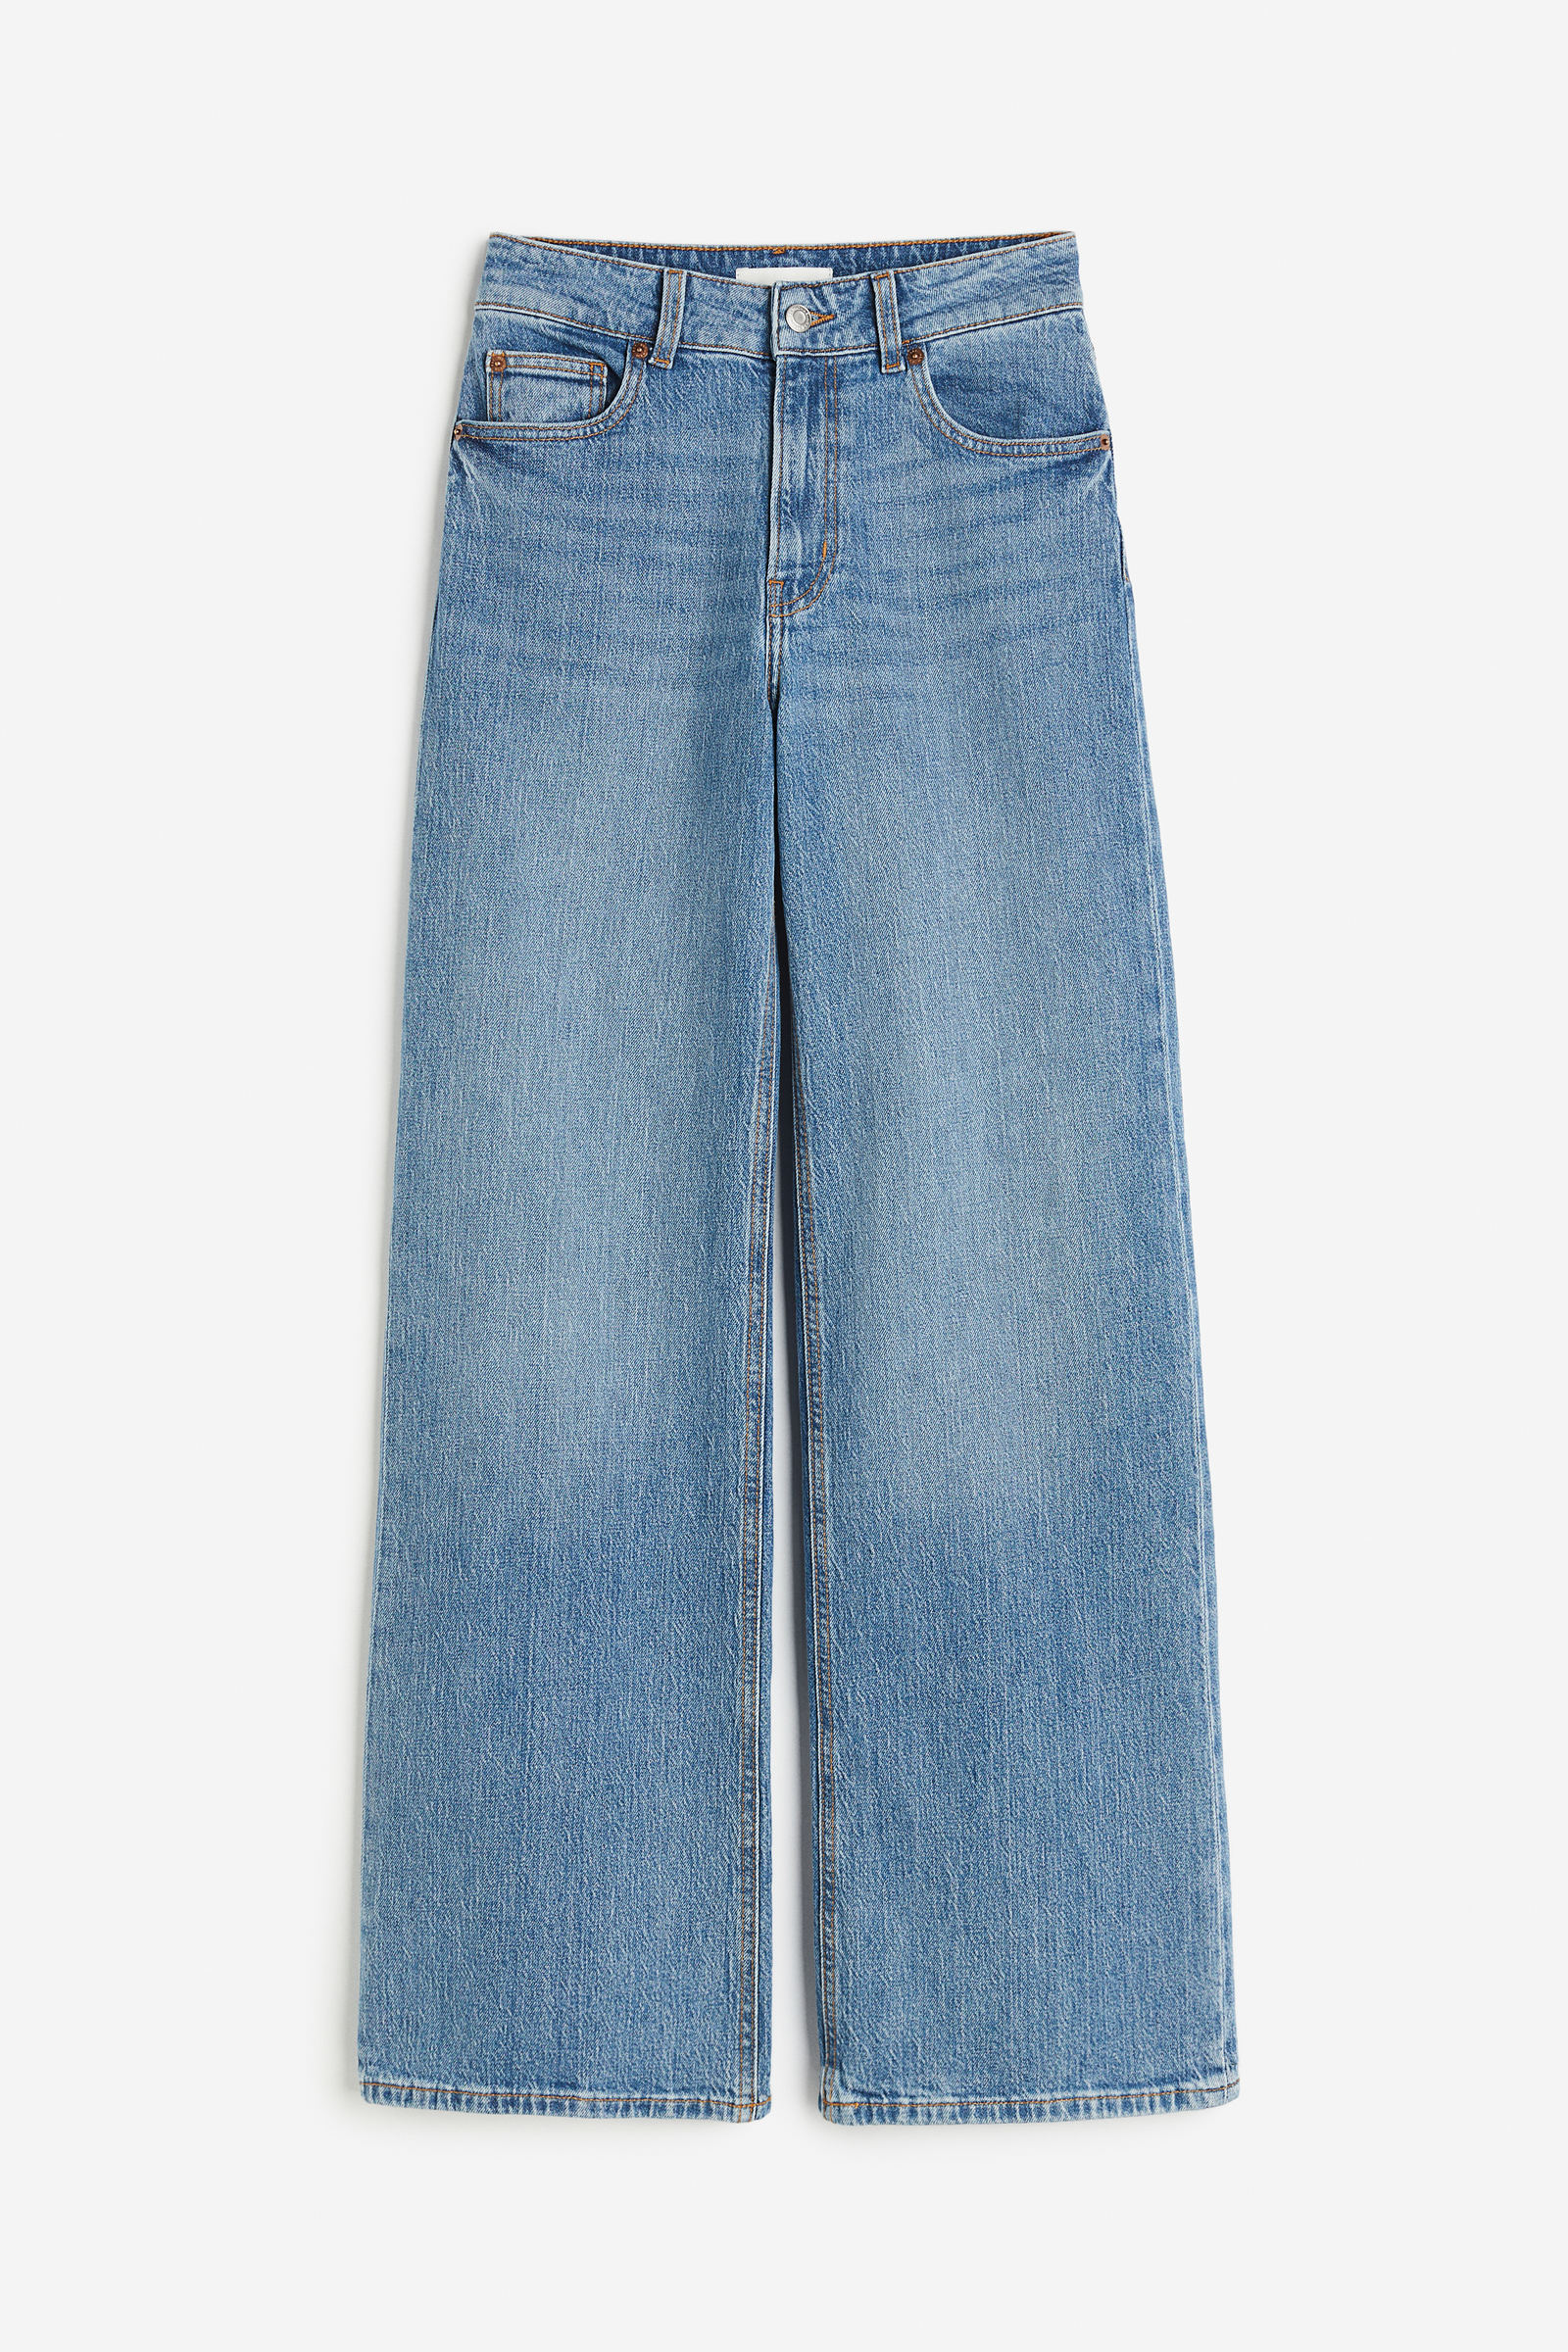 Los pantalones anchos tostados de H&M que llevan las estilistas